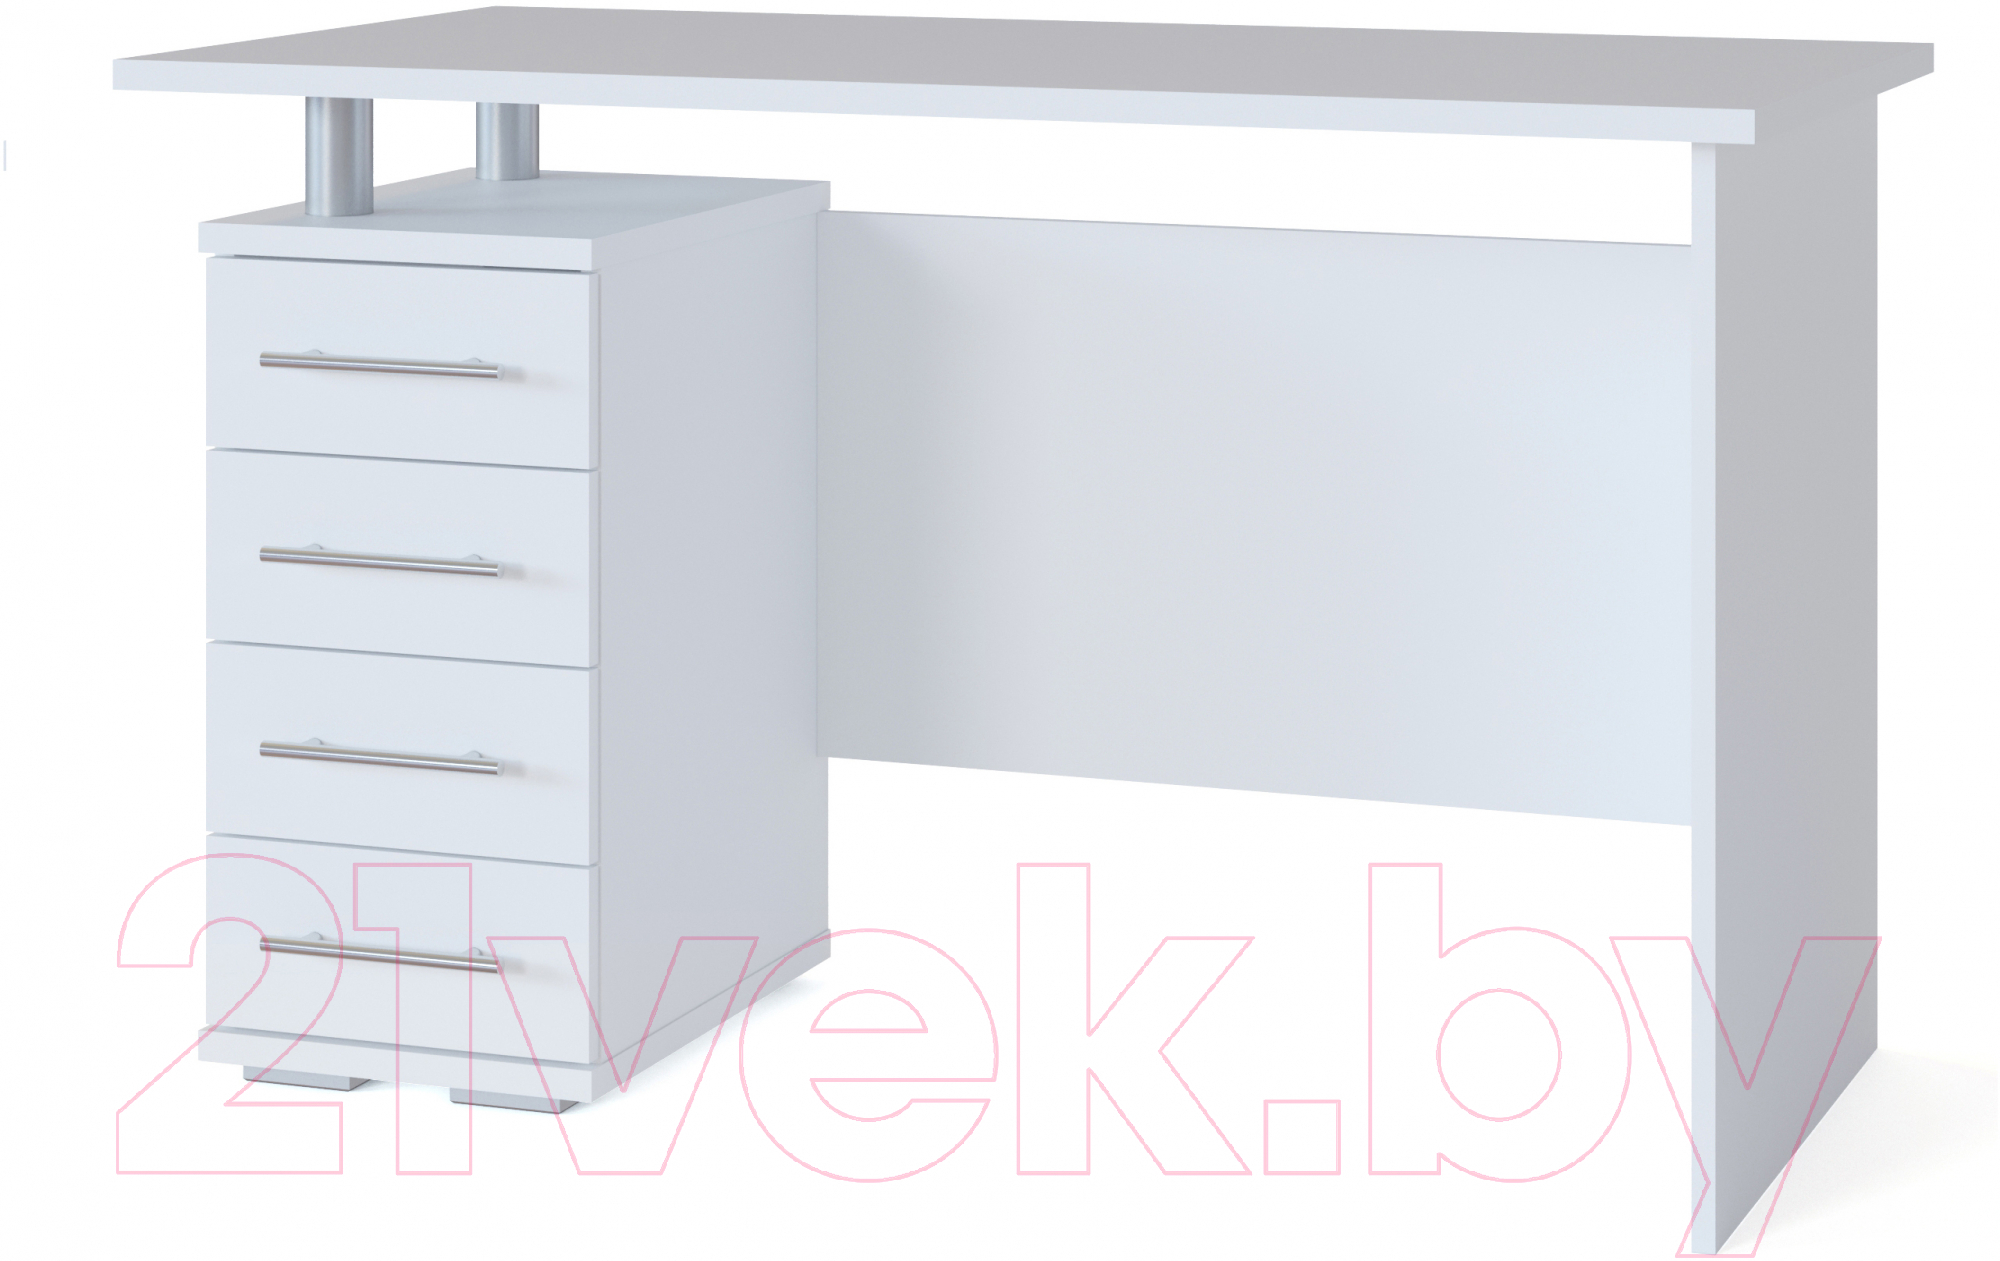 Письменный стол Сокол-Мебель КСТ-106.1 (белый)